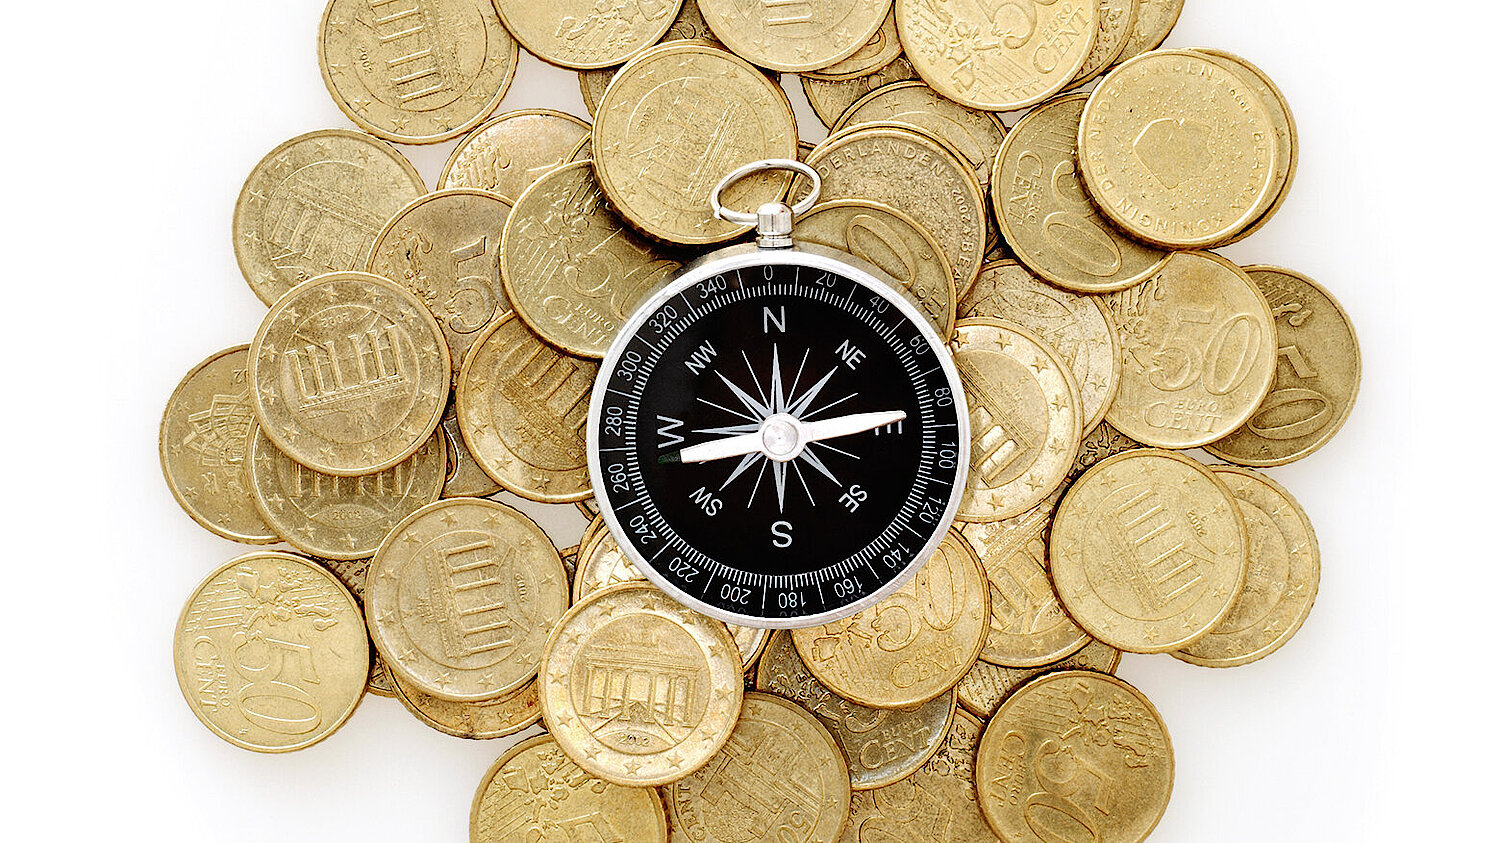 Foto Kompass liegt au Münzen